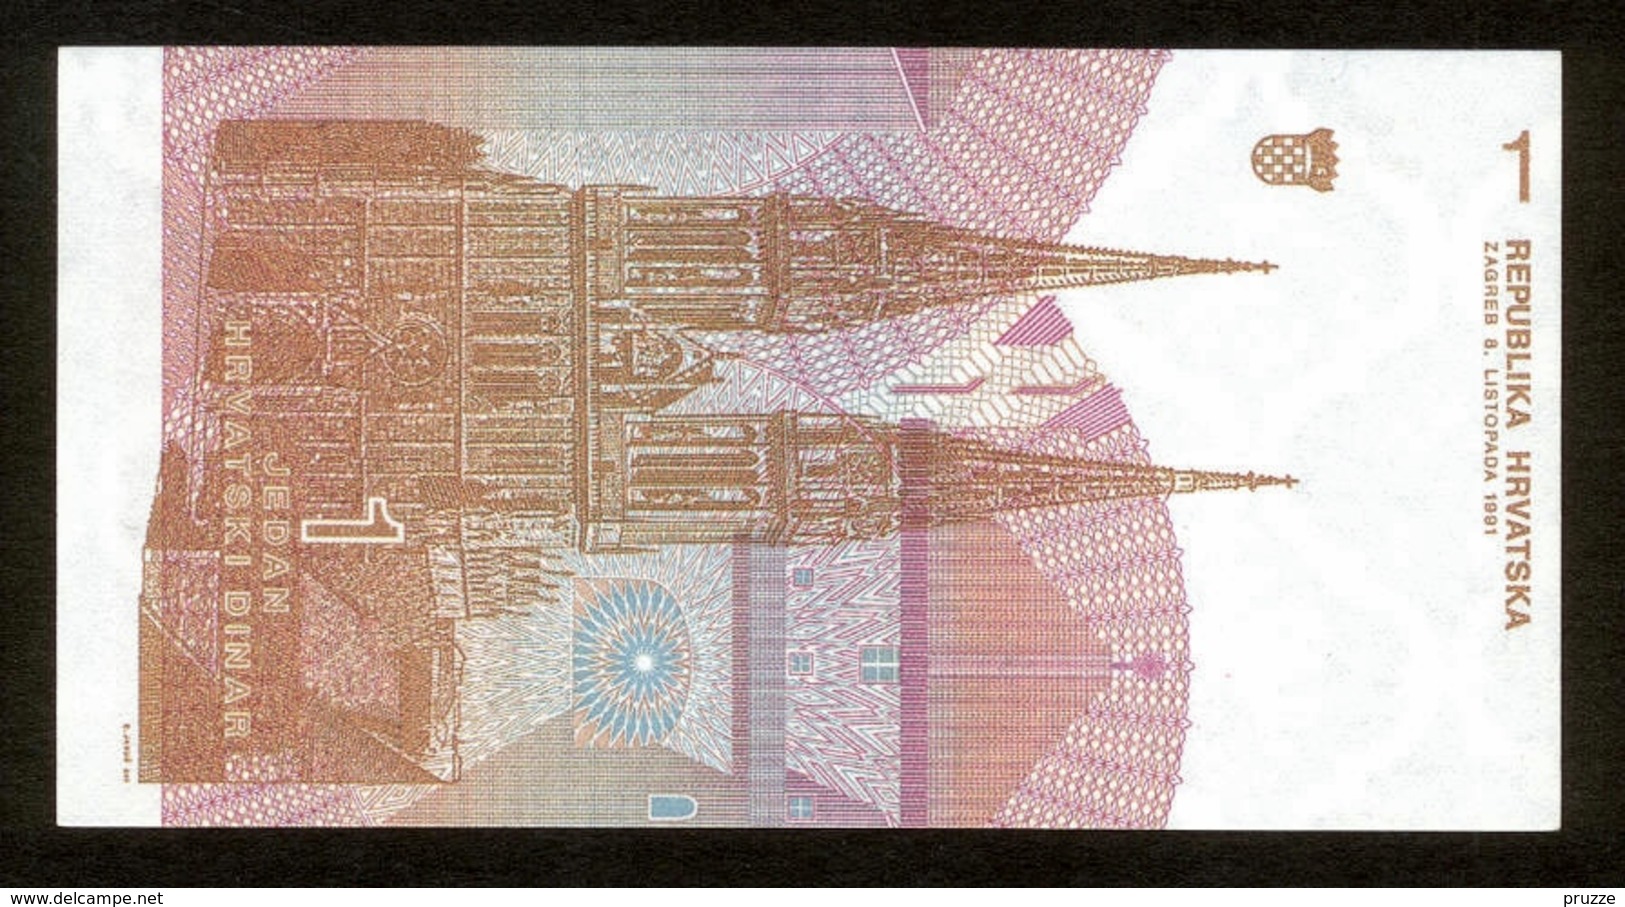 Republika Hrvatska - Kroatien 1991, 1 Dinar, F5240915, UNC - Kroatien